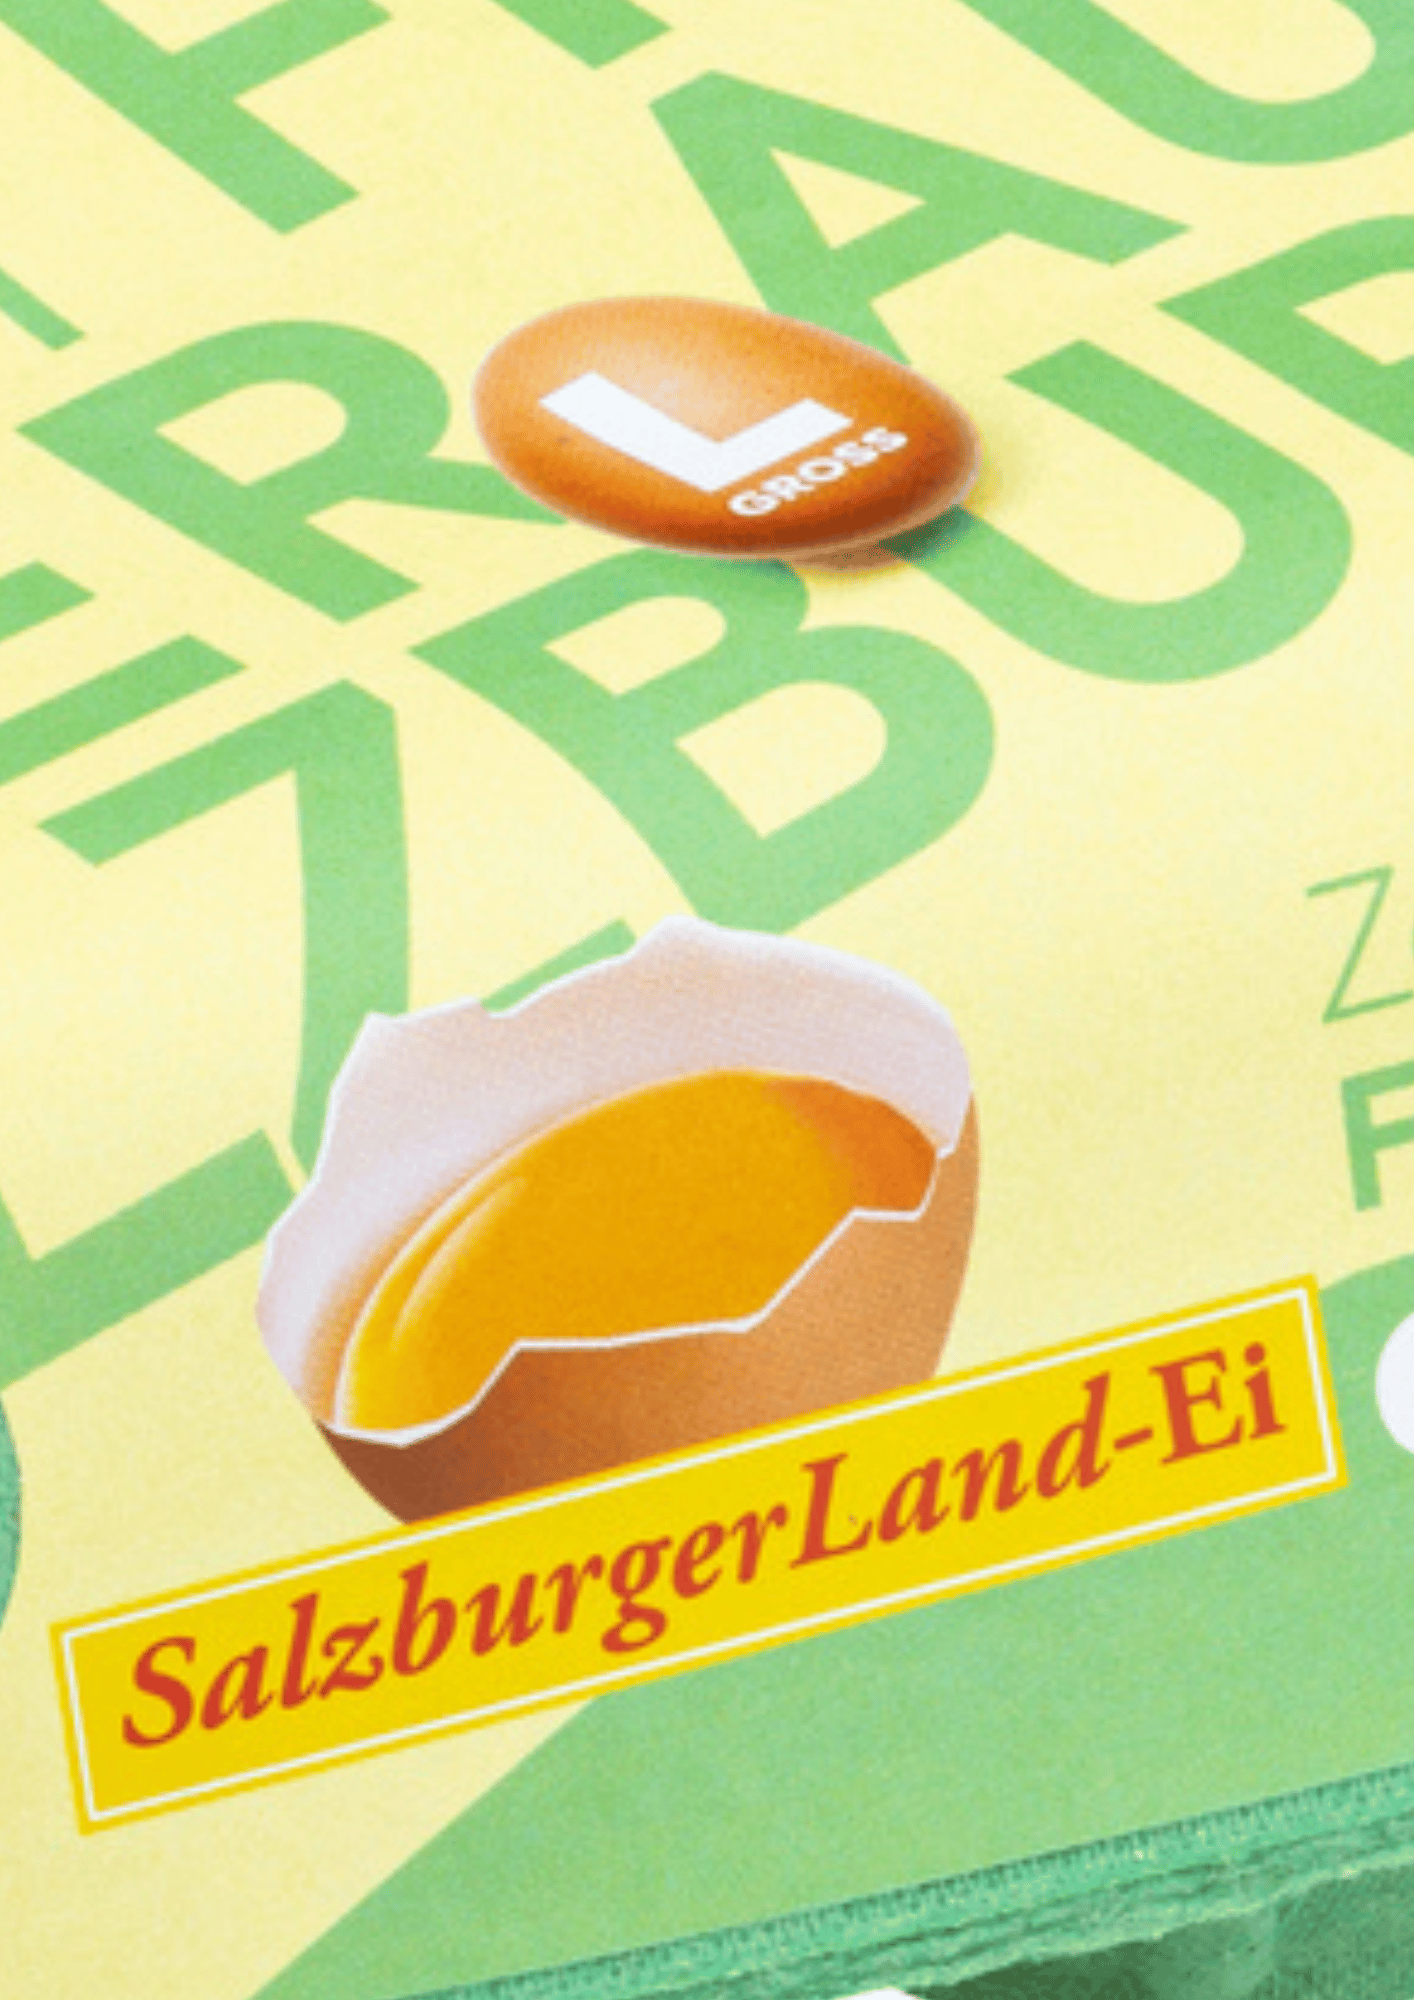 Goisbauer - SalzburgerLand Ei bei Salzburg schmeckt